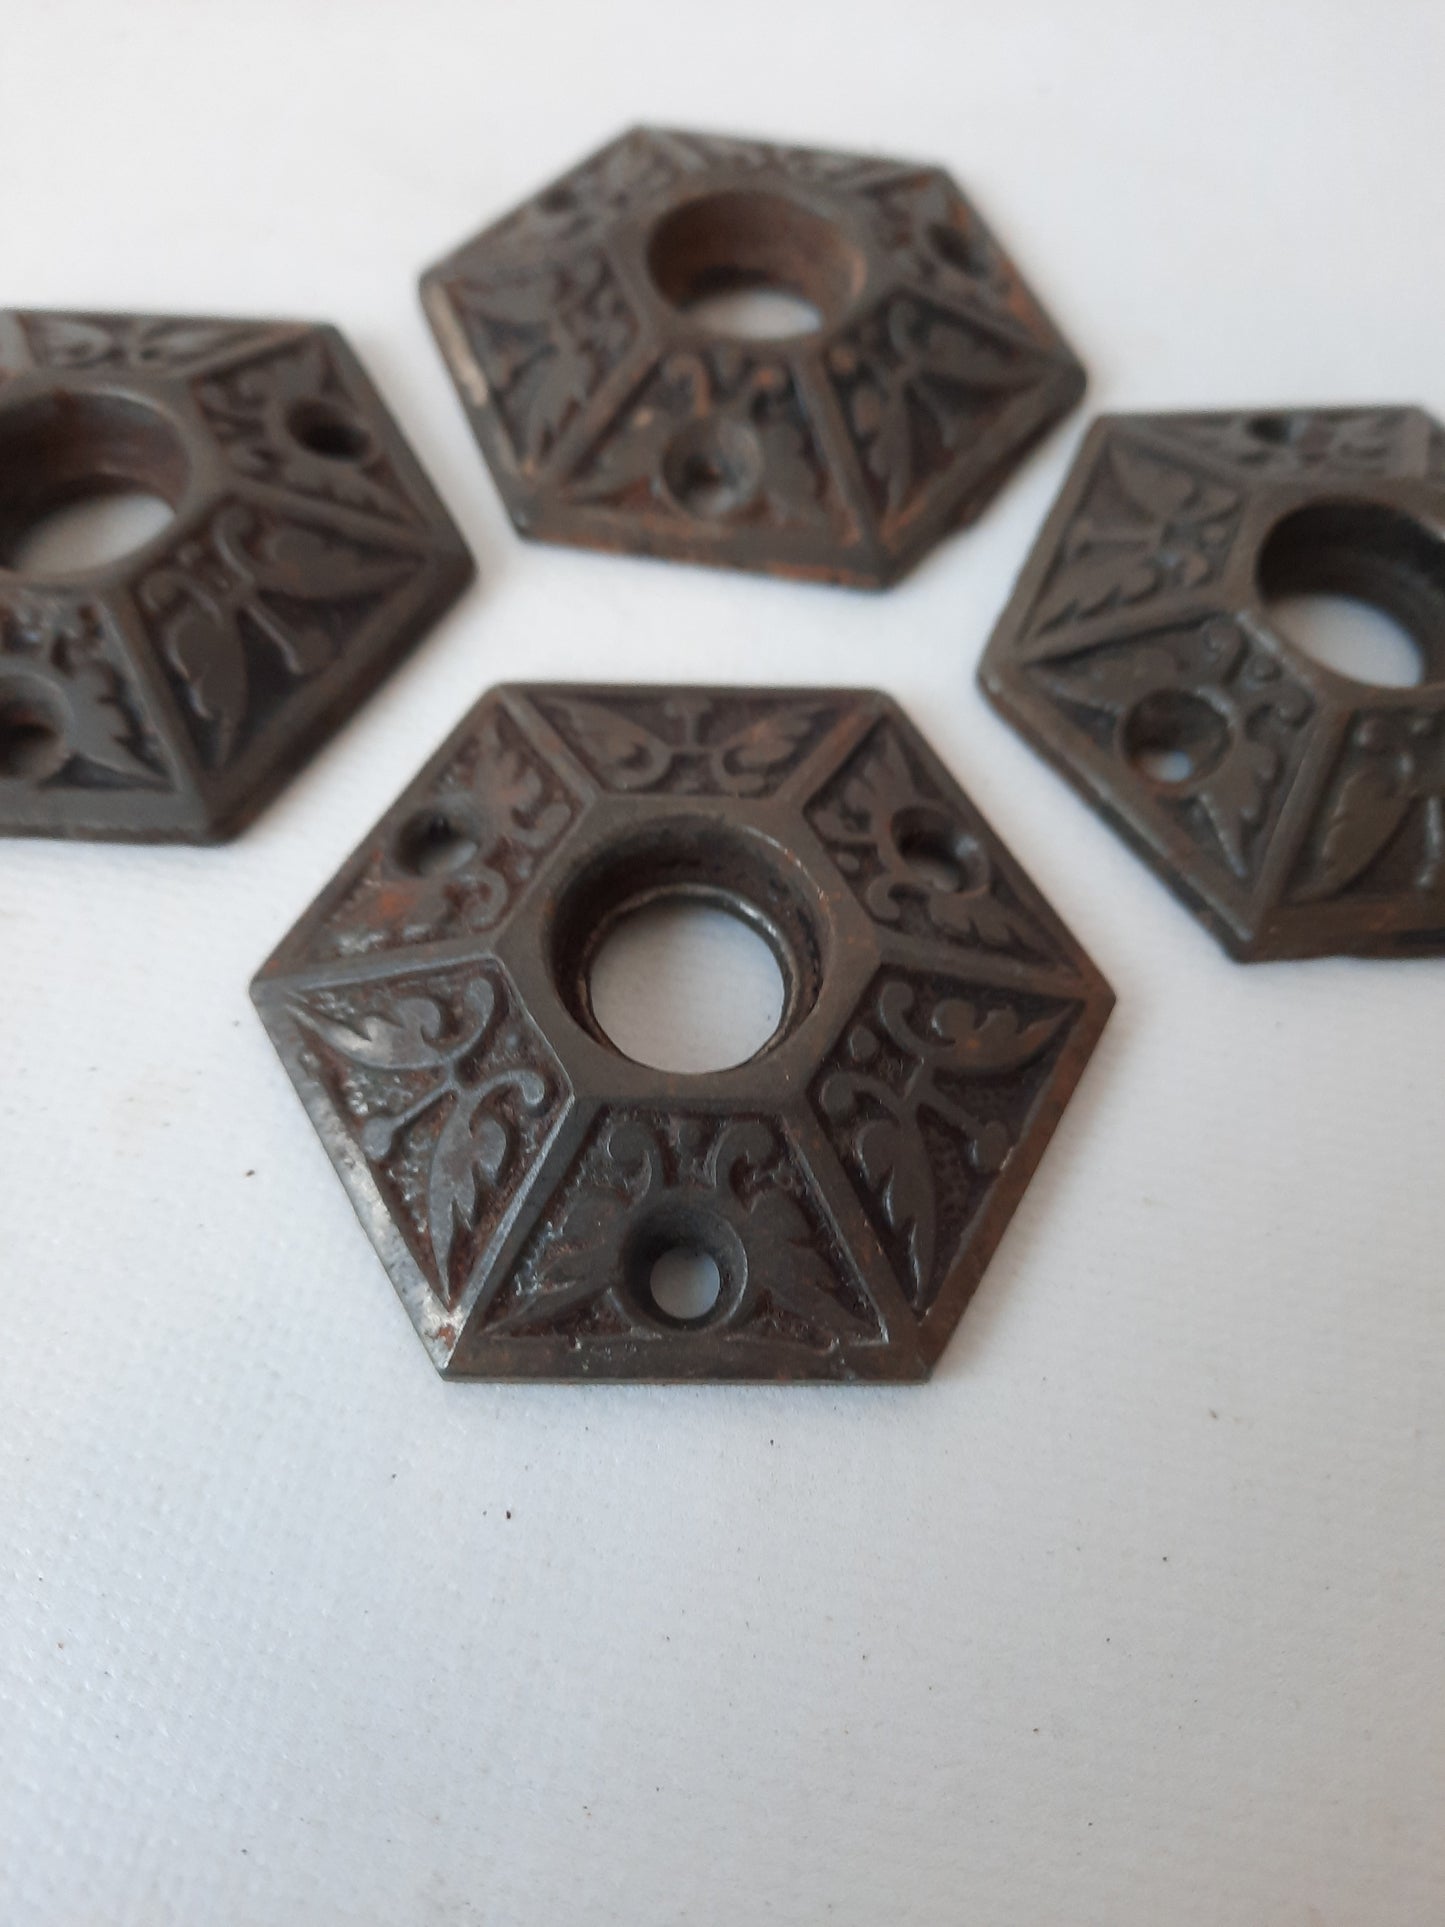 Two Antique Hexagon Cast Iron Door Knob Collars, Iron Hexagonal Eastlake Doorknob Rosetttes